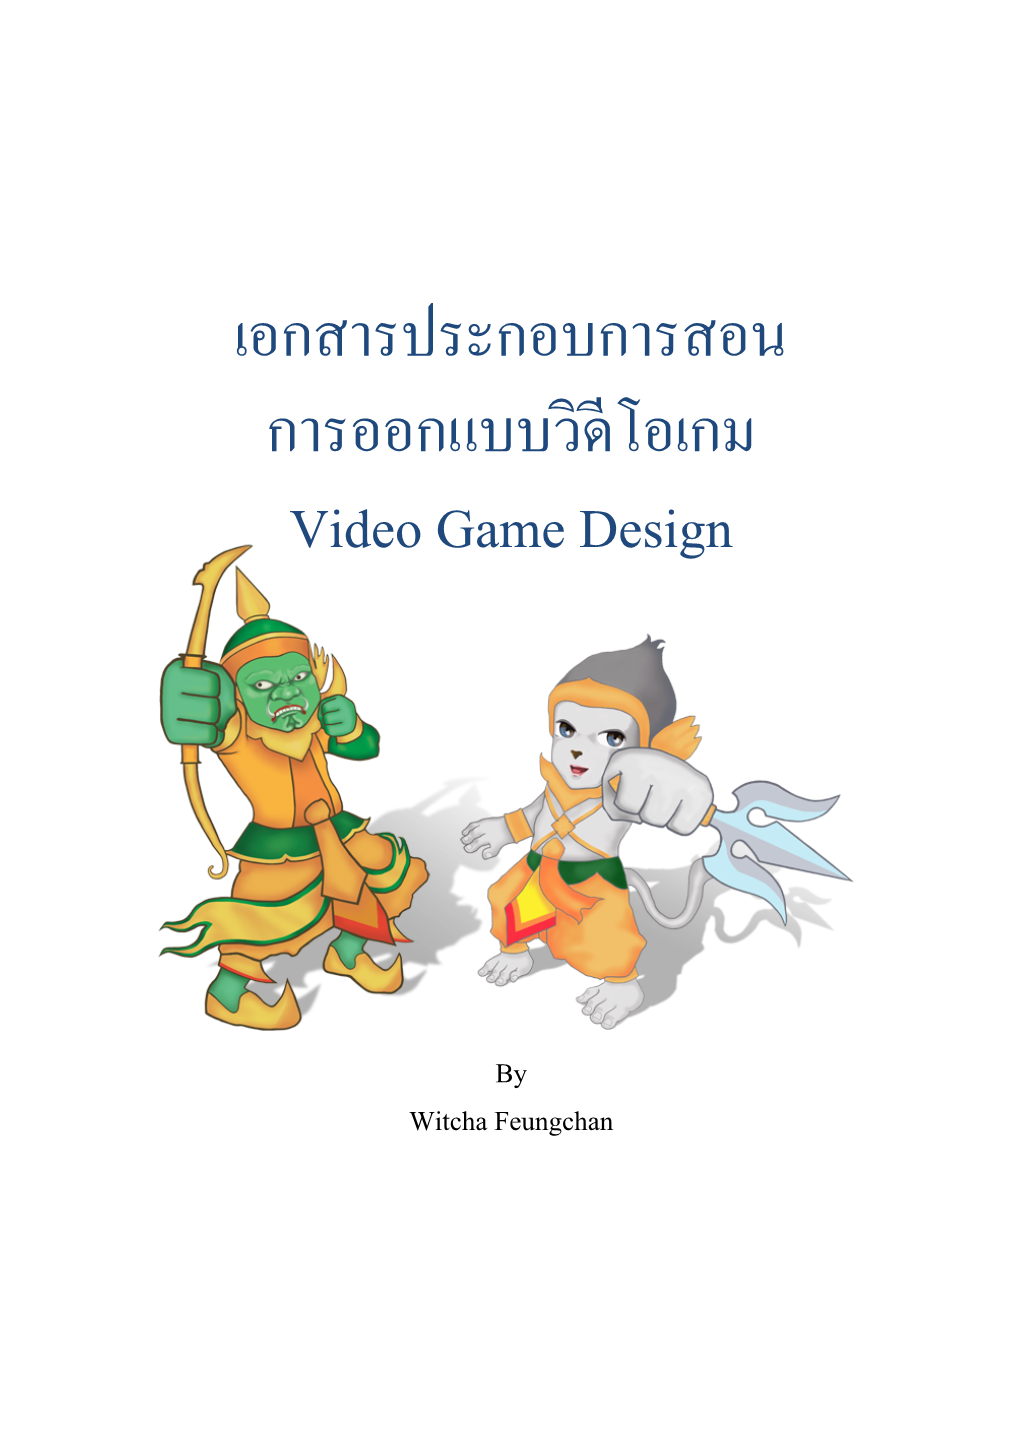 เอกสารประกอบการสอน การออกแบบวิดีโอเกม Video Game Design